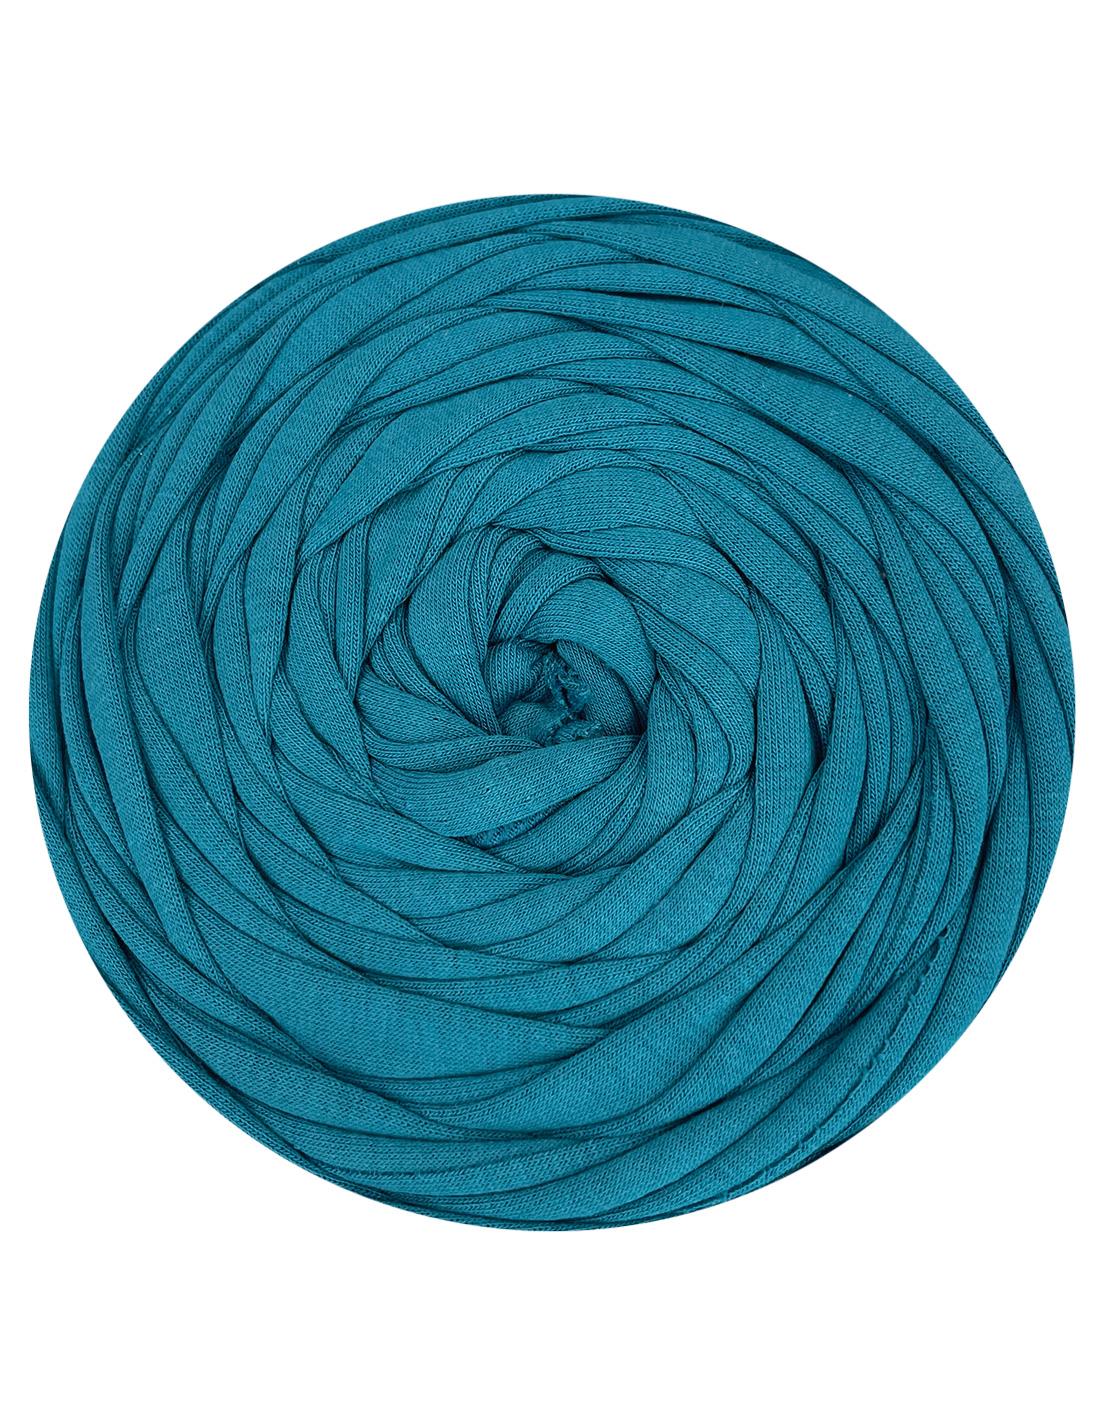 Muted steel blue t-shirt yarn (100-120m)